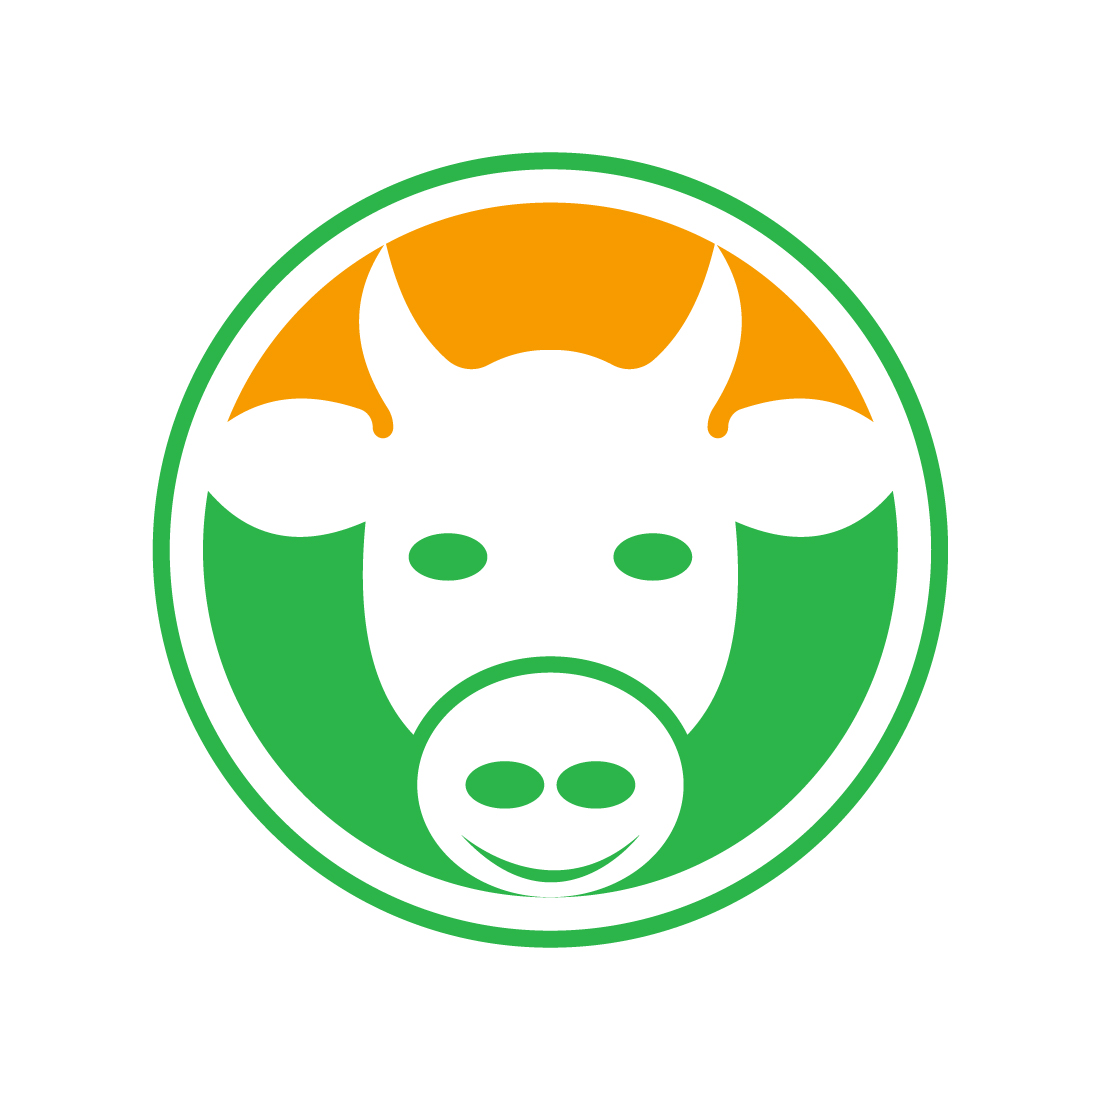 Creative Cow head logo design, Vector design template preview image.